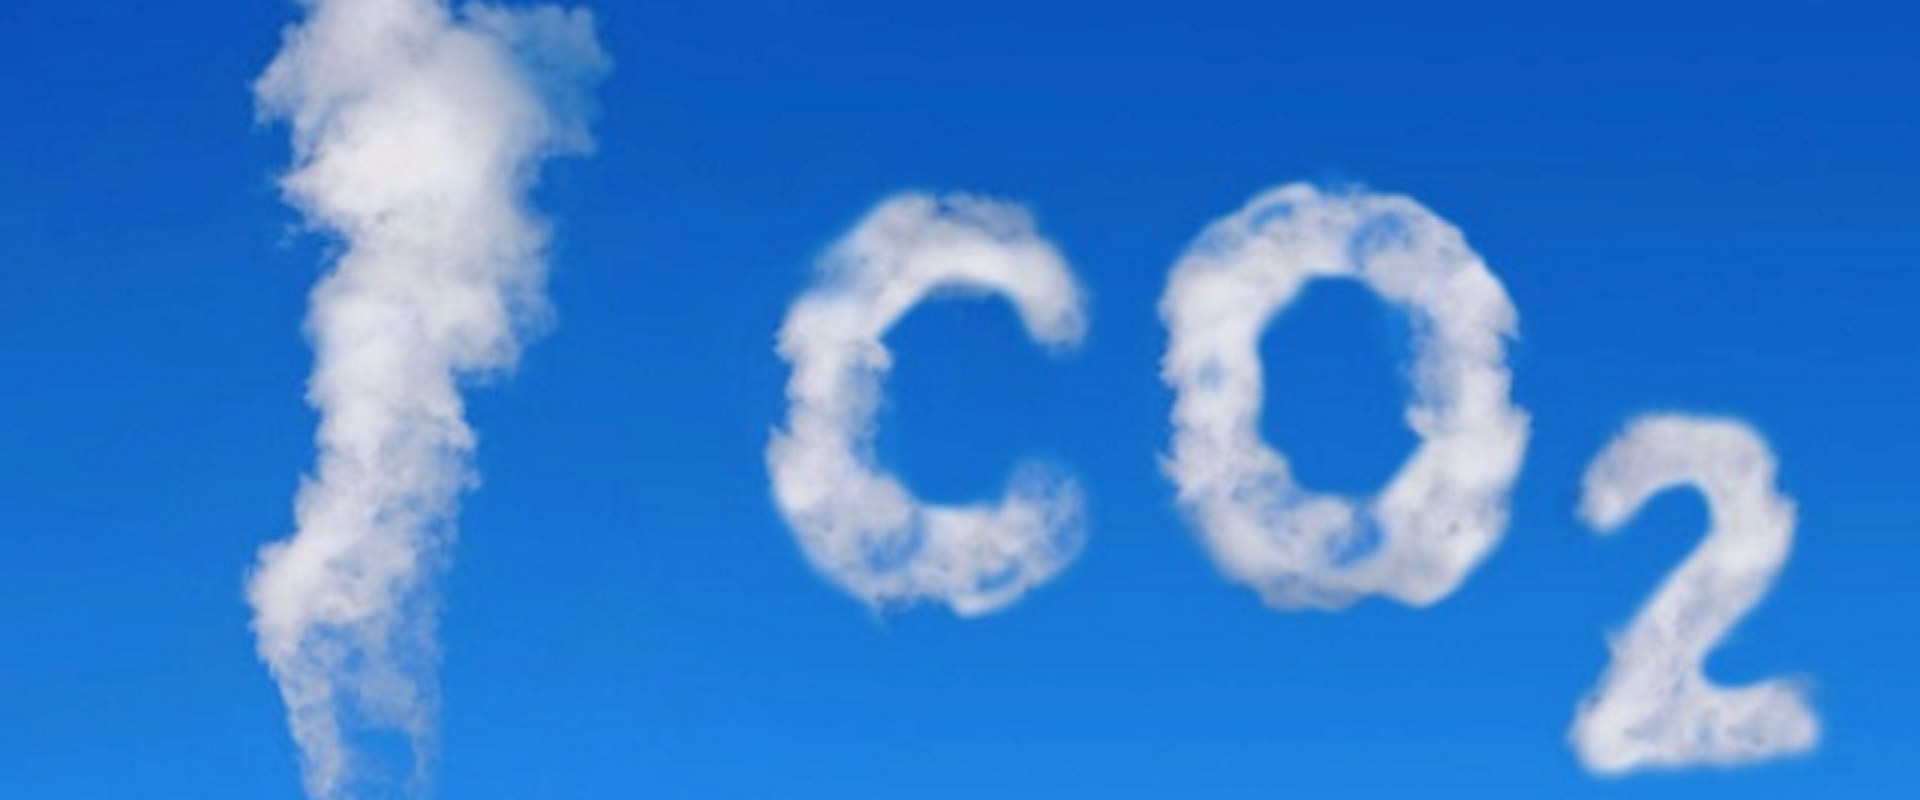 CO2-sky på blå himmel